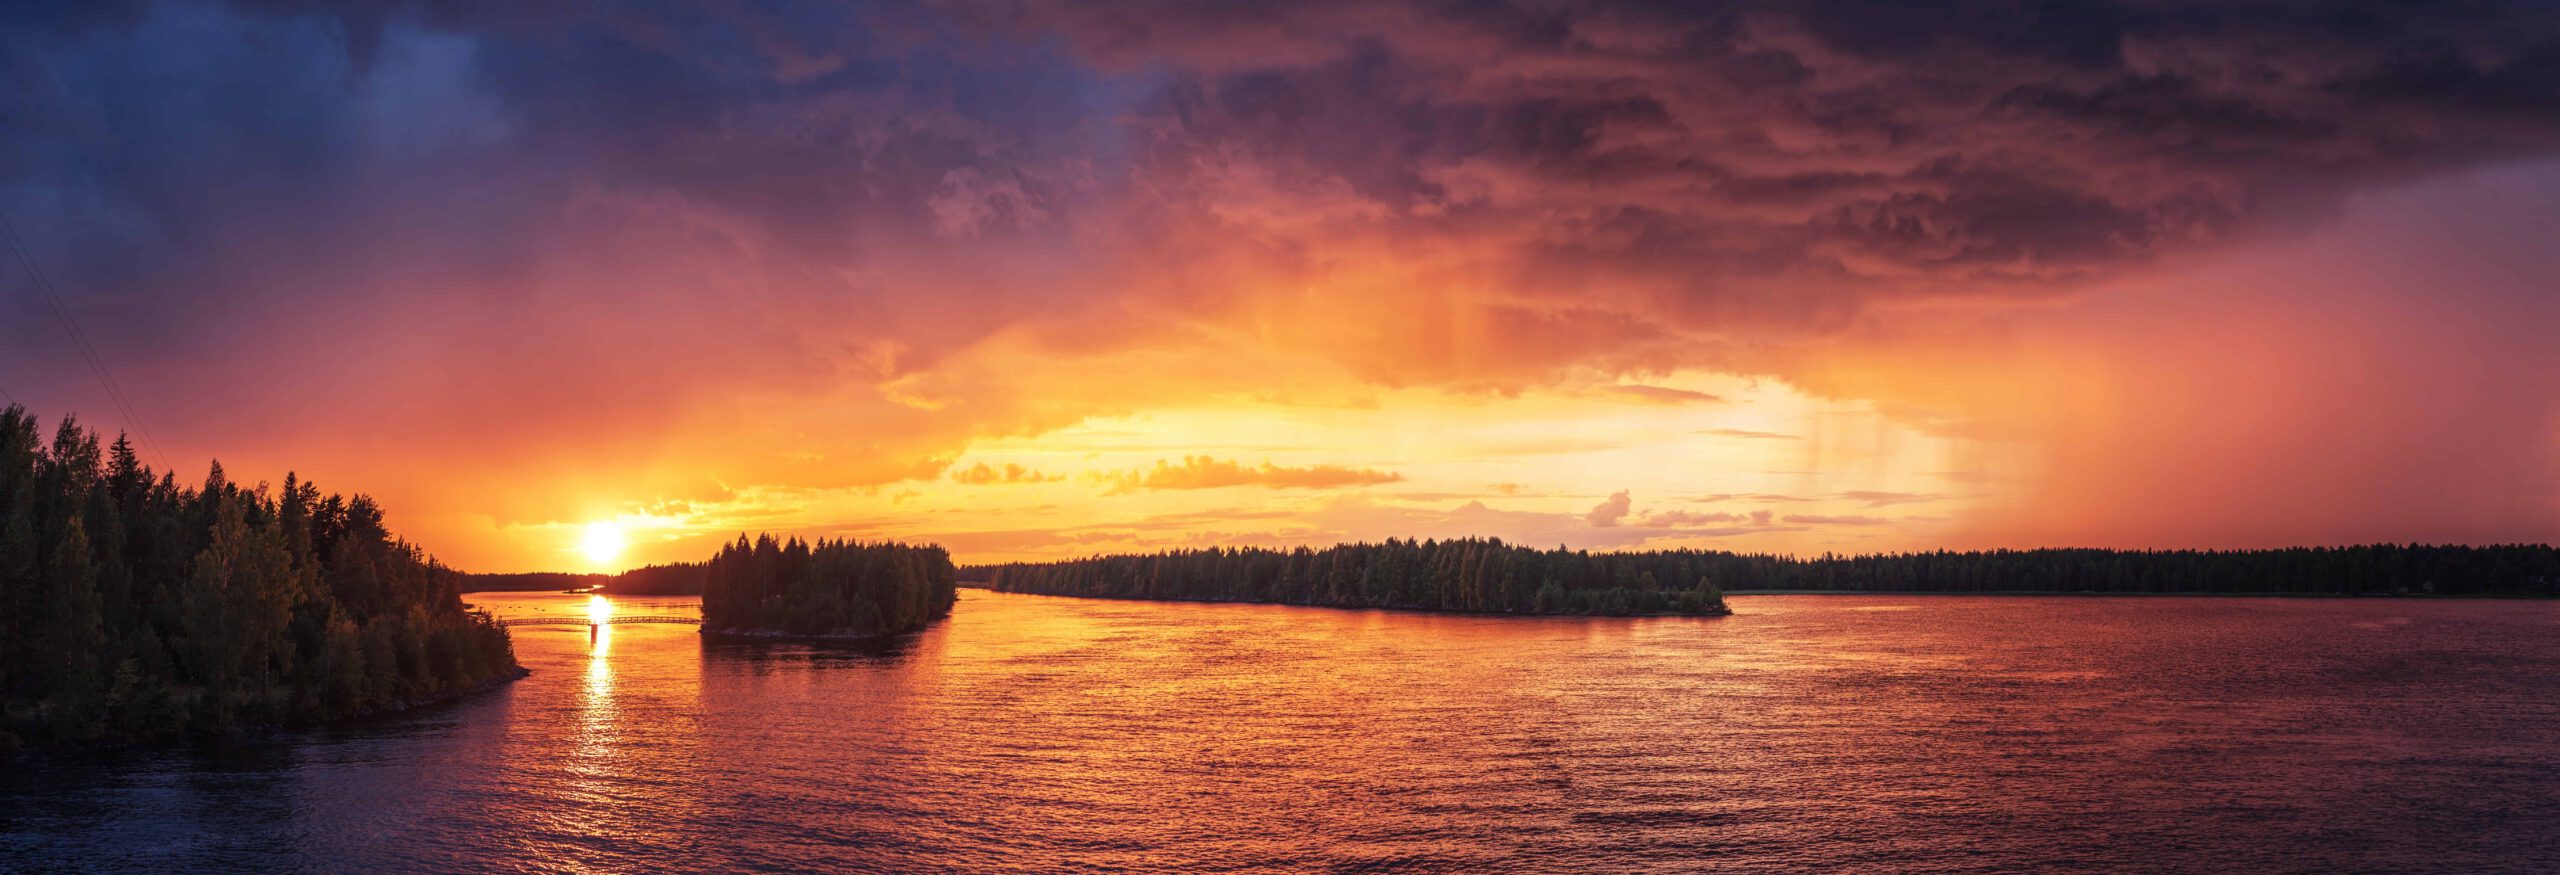 Sonnenuntergang bei Vaala, Finnland